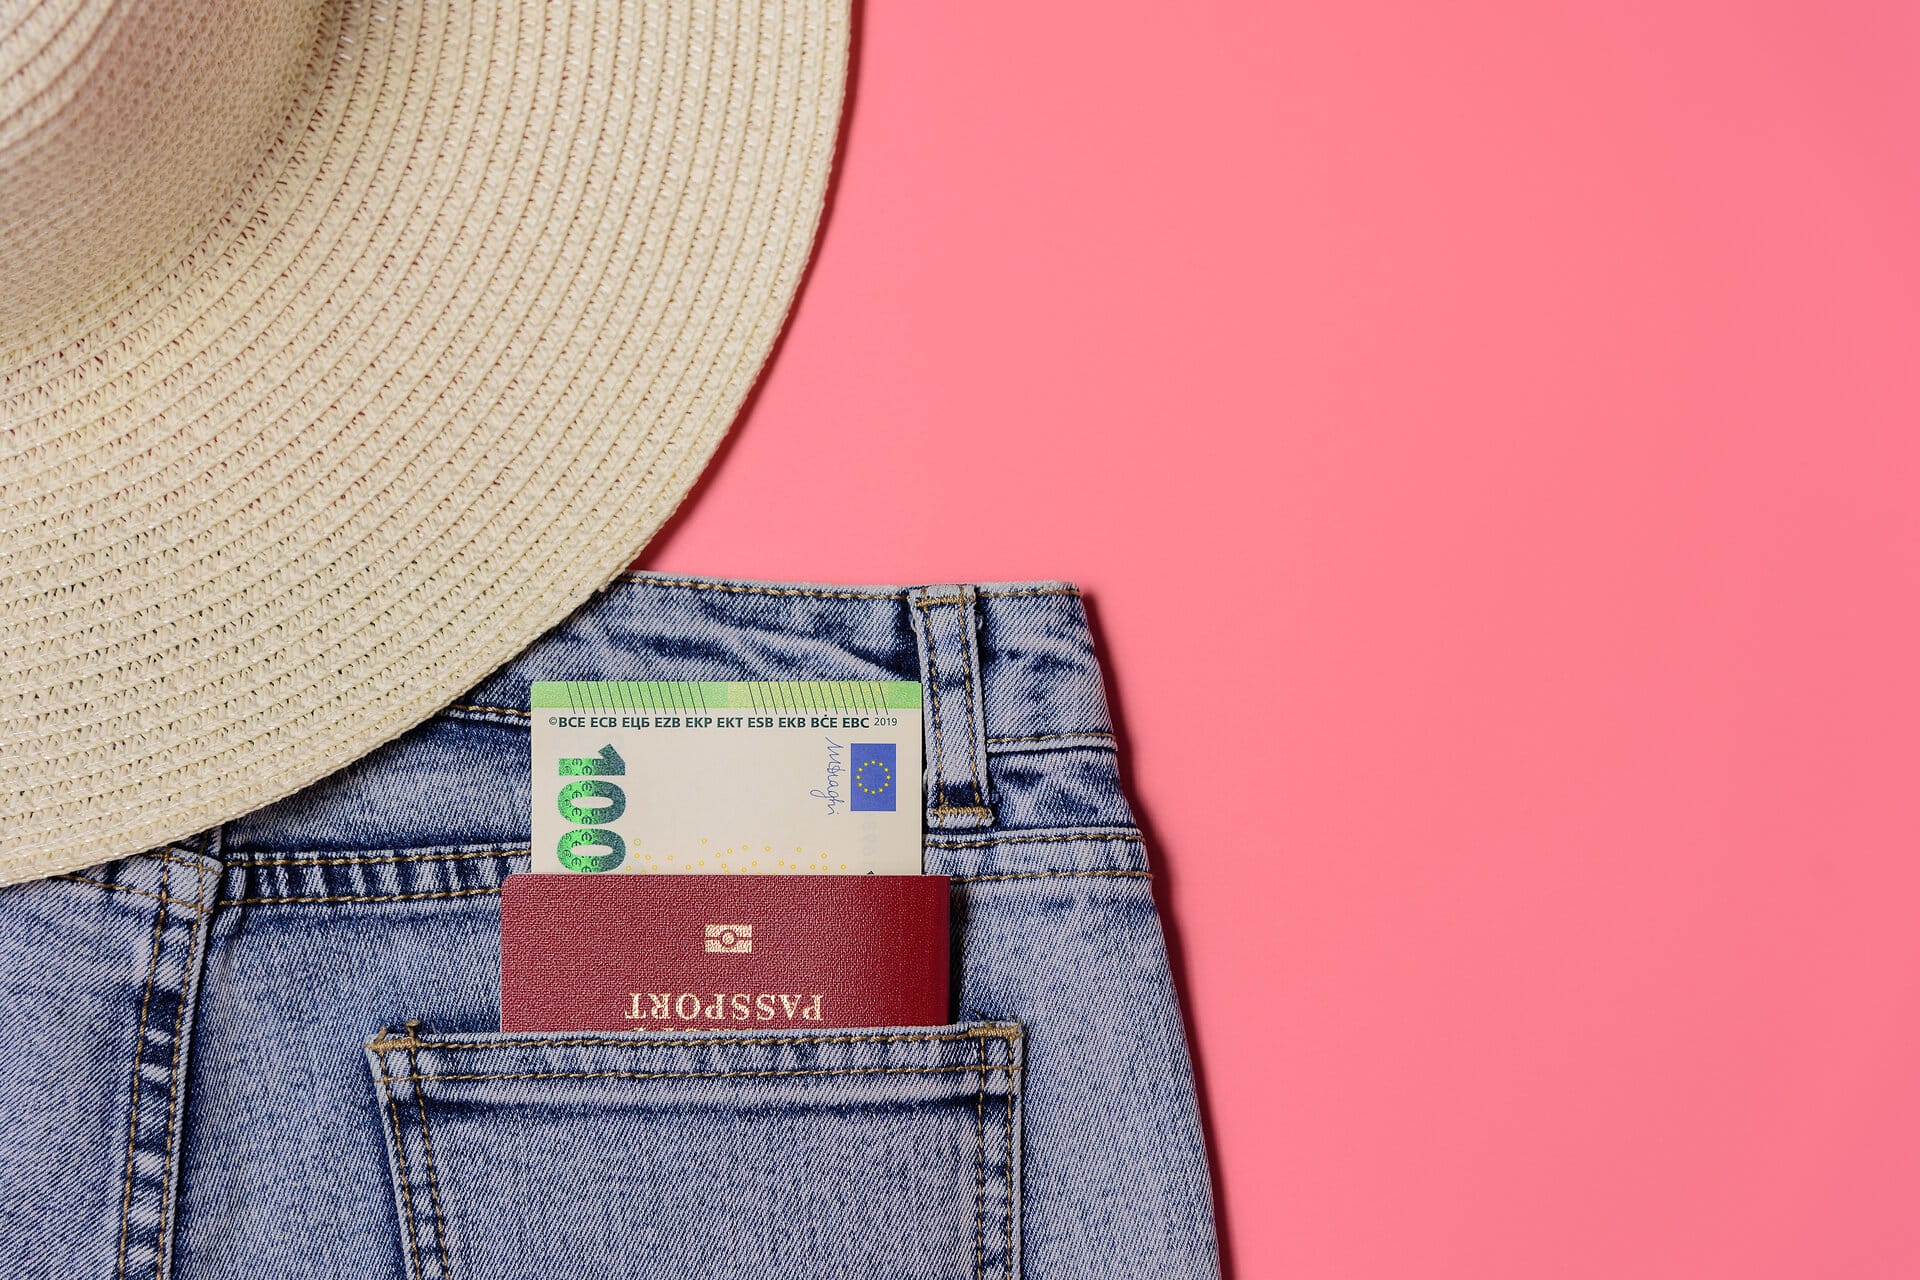 Auschnitt von Jeans und Strohhut auf rosafarbenem Hintergrund in der hinteren Tasche steckt ein Reisepass und ein 100 Euroschein